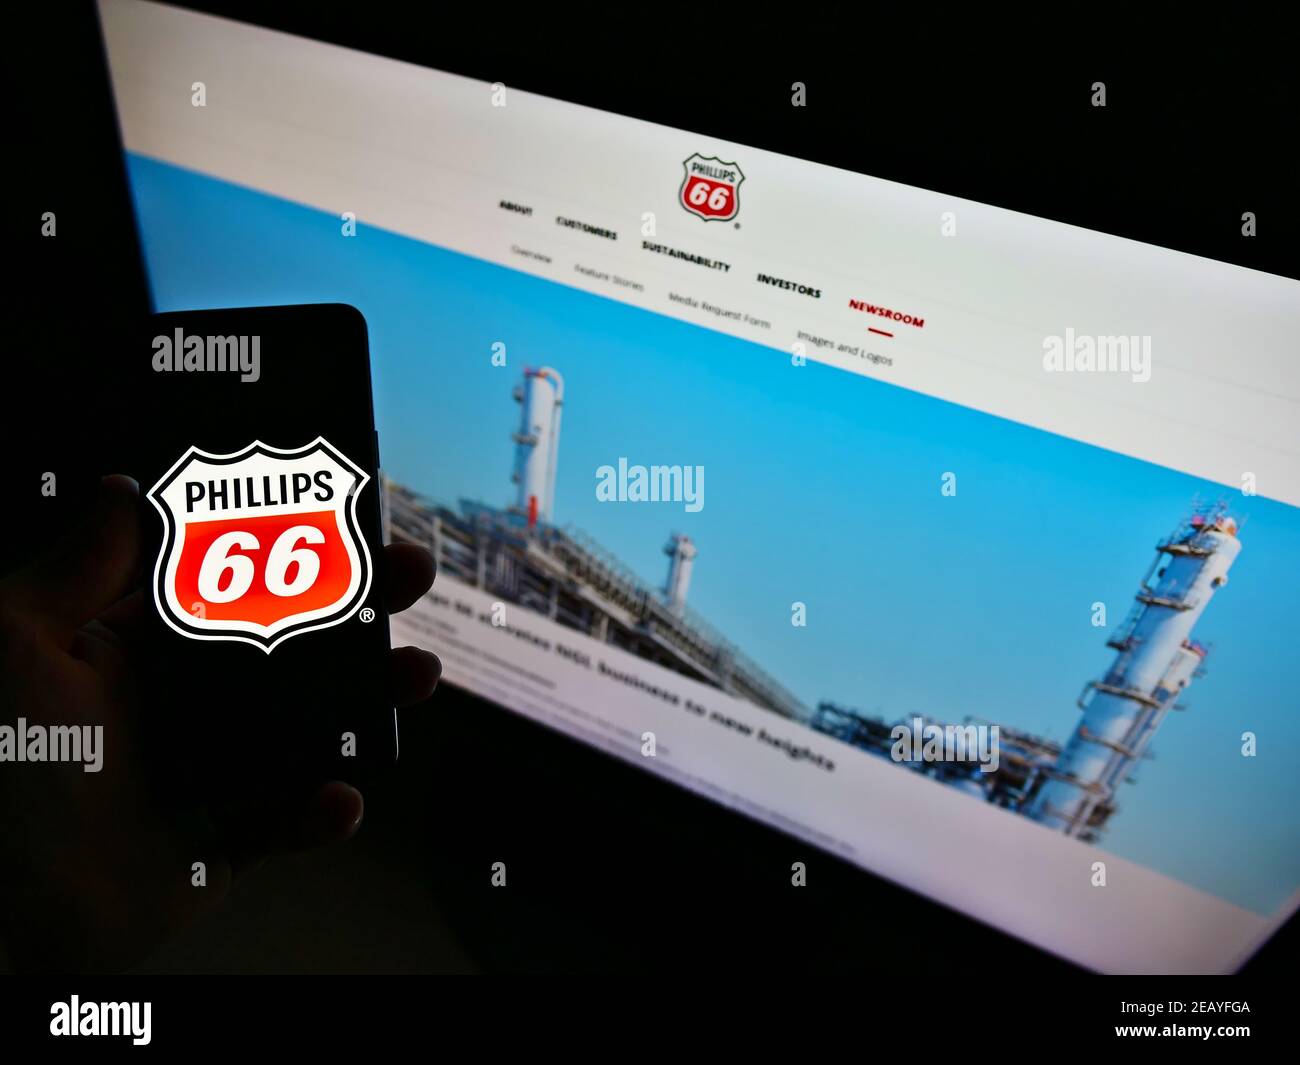 Persona che detiene smartphone con il logo della società americana di petrolio e gas Phillips 66 sullo schermo di fronte al sito web. Mettere a fuoco il display del telefono. Foto Stock